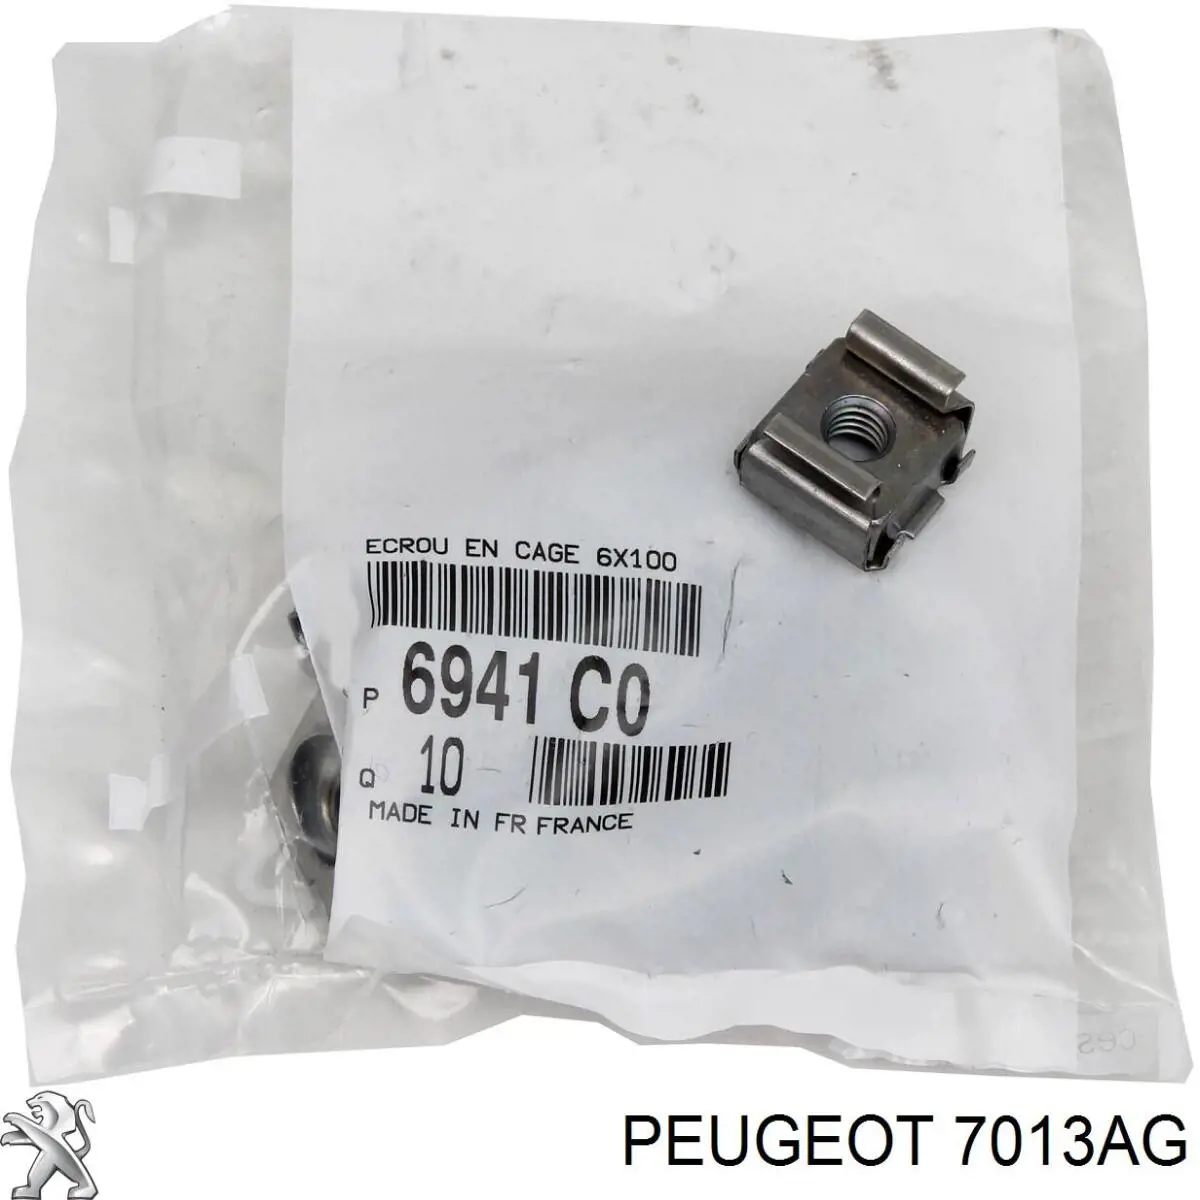 7013AG Peugeot/Citroen protección motor / empotramiento